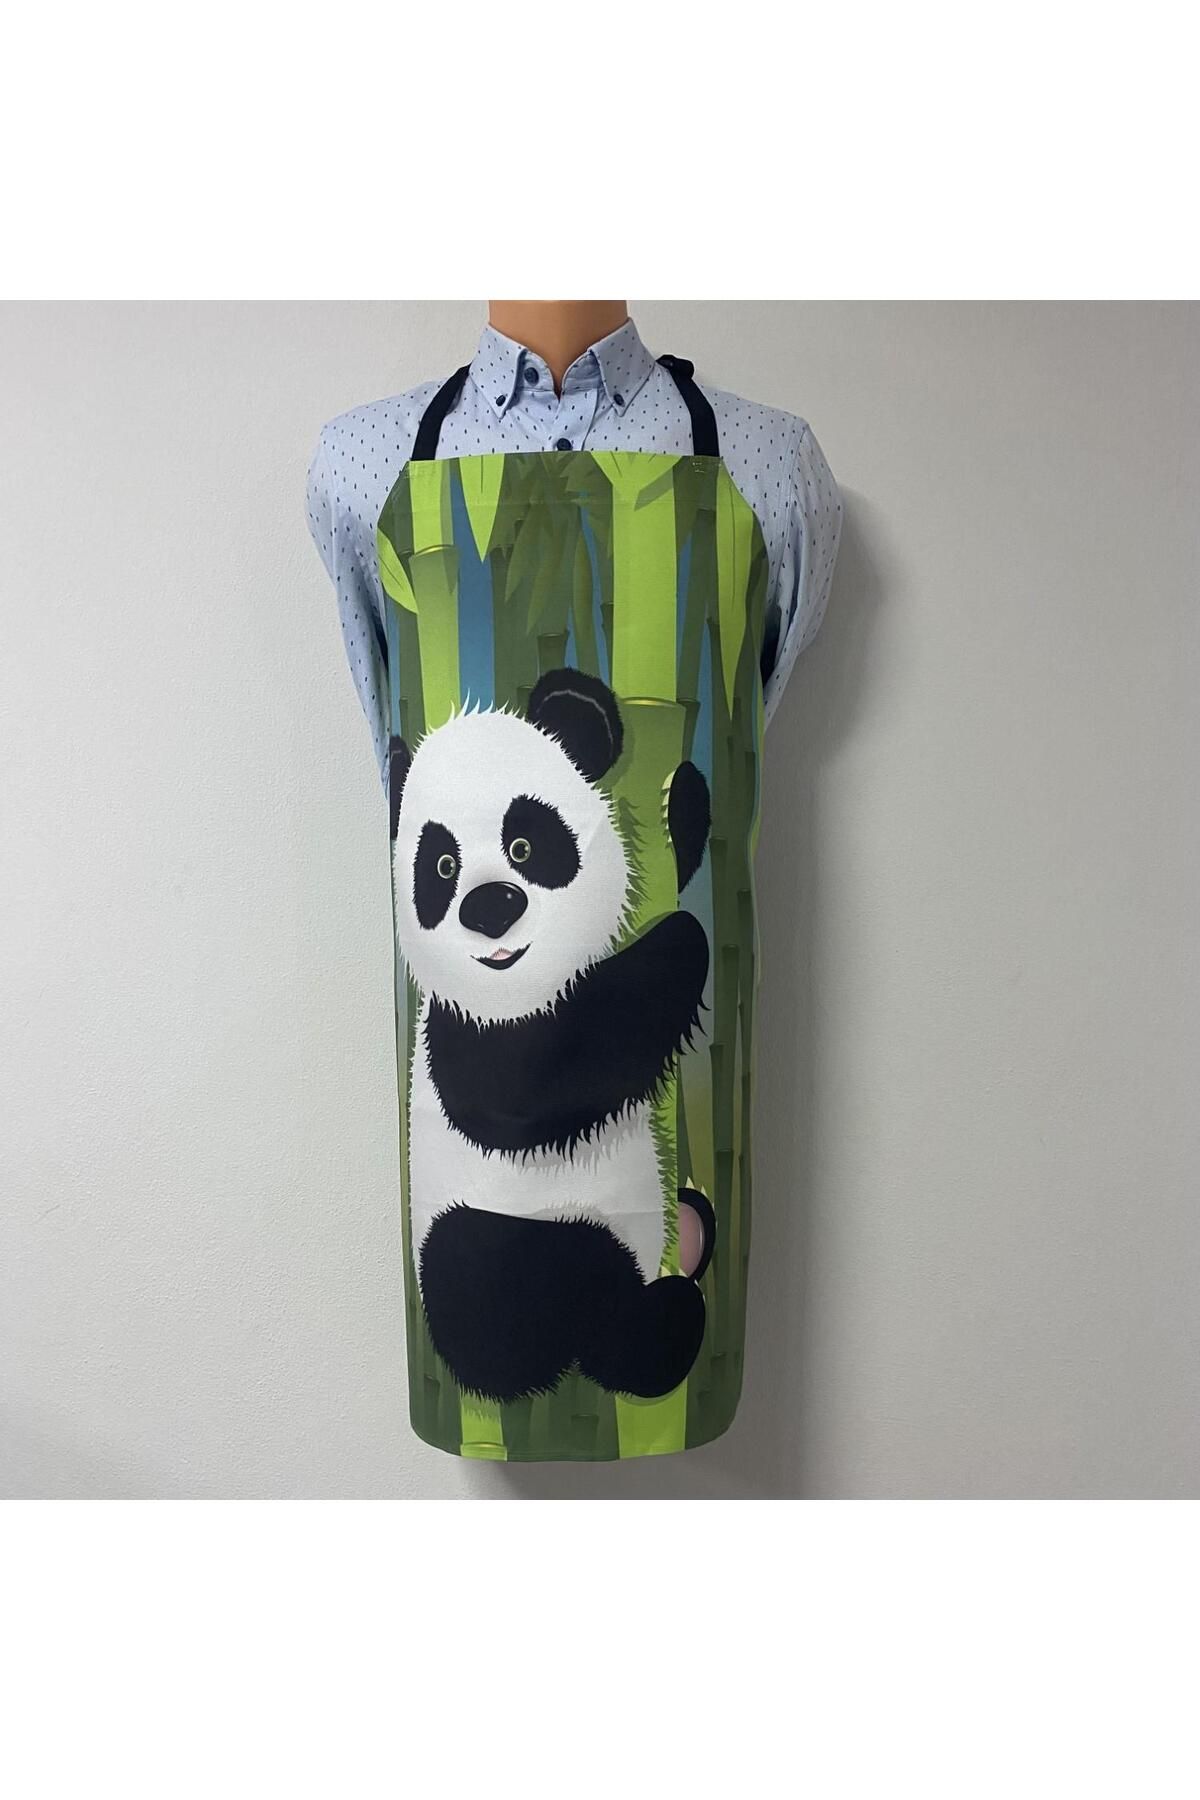 Tedz Collection PAREDORA Sevimli Panda Mutfak Önlüğü